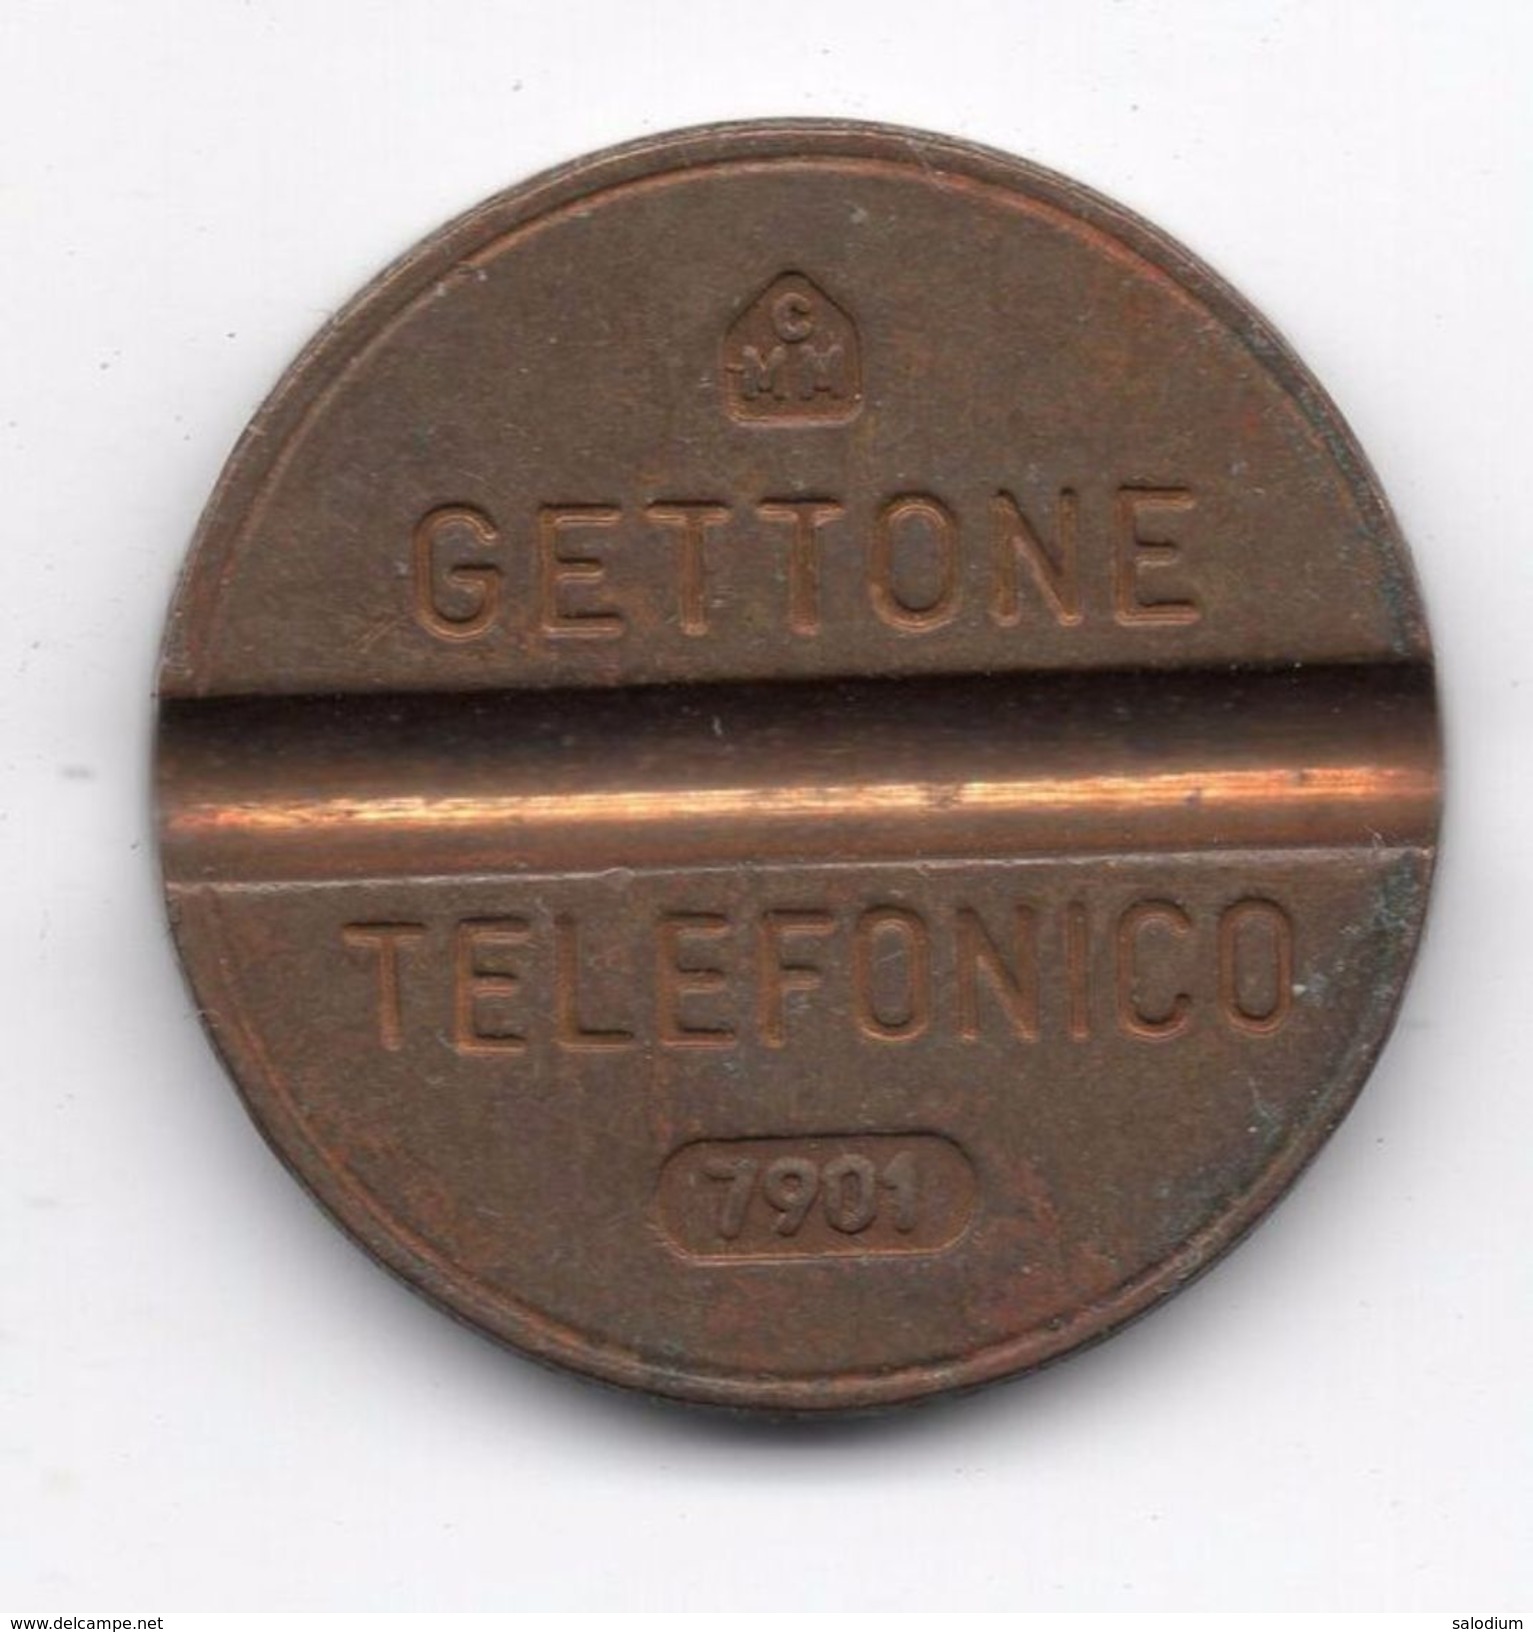 Gettone Telefonico 7901 Token Telephone - (Id-662) - Professionnels/De Société